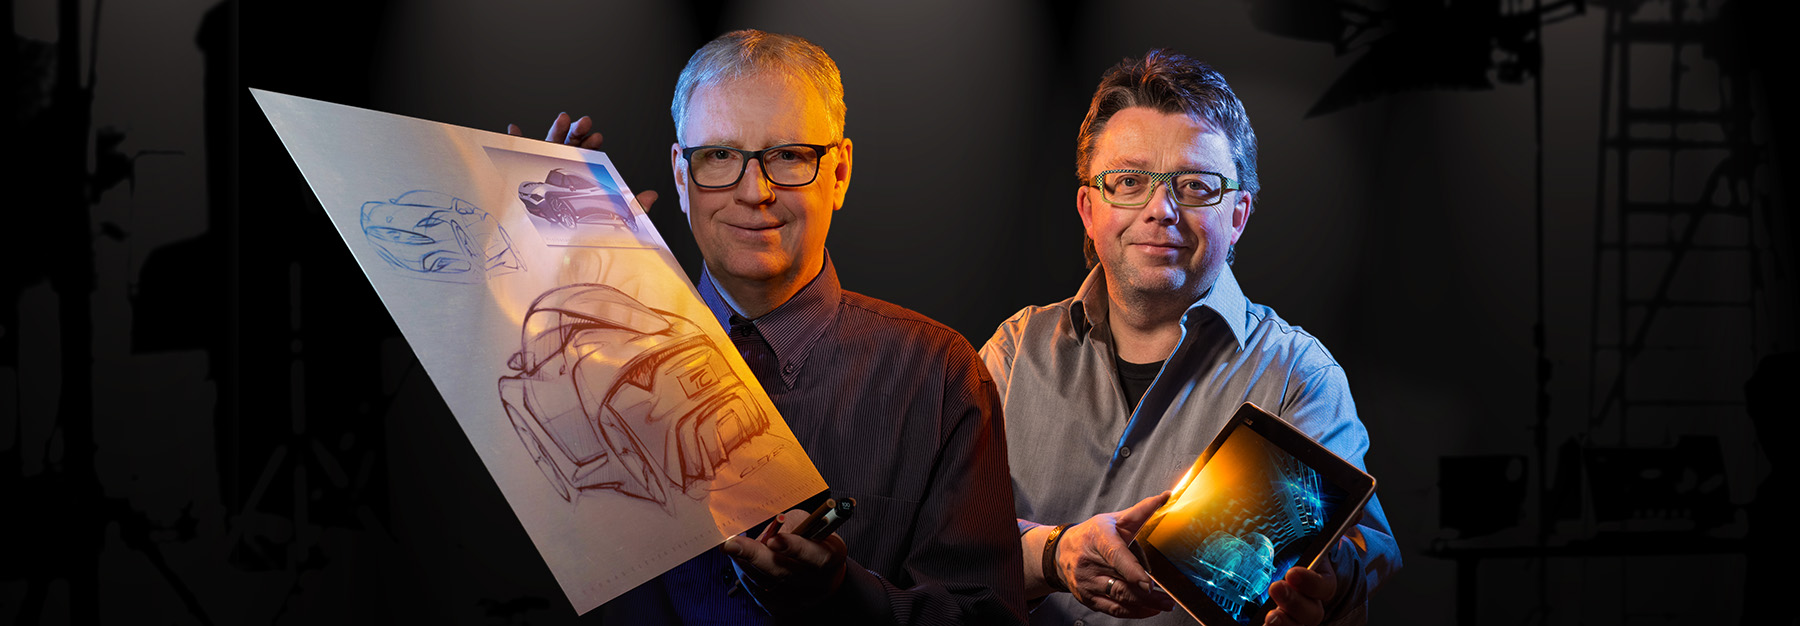 Designer Thomas Clever mit einer Handskizze und der Fotograf Peter Hildebrandt mit einem Tablet in der Hand.